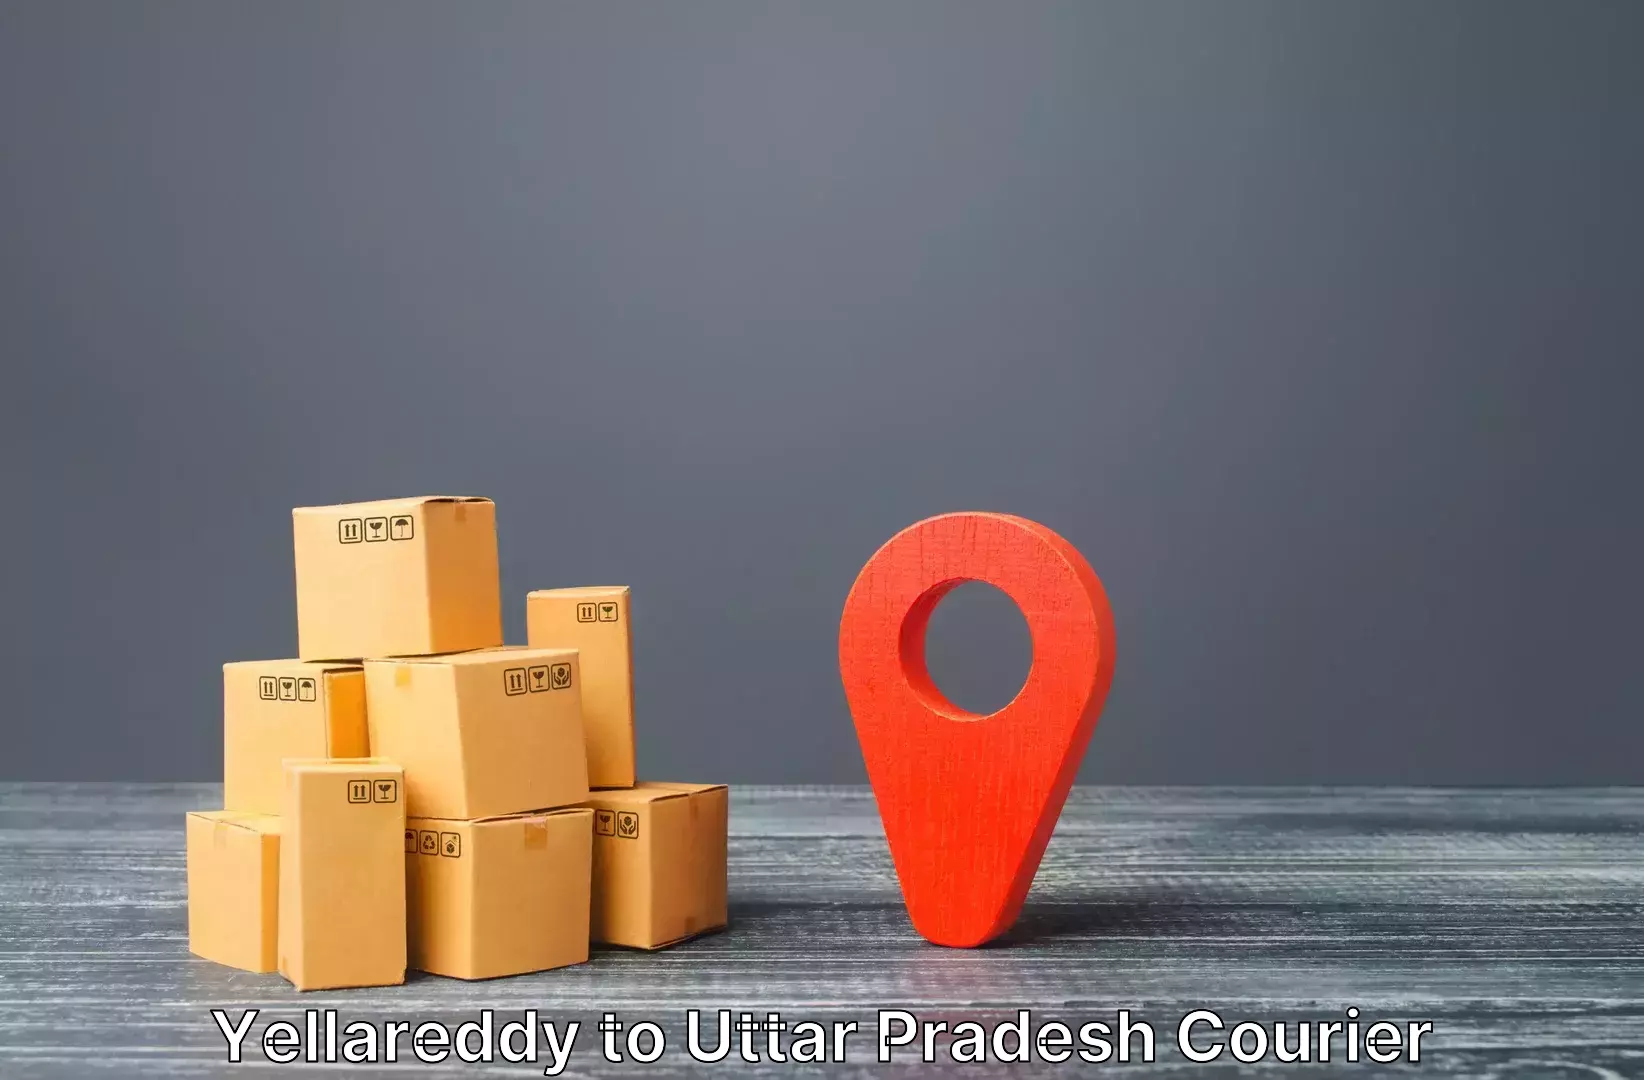 Bulk luggage shipping Yellareddy to IIT Varanasi